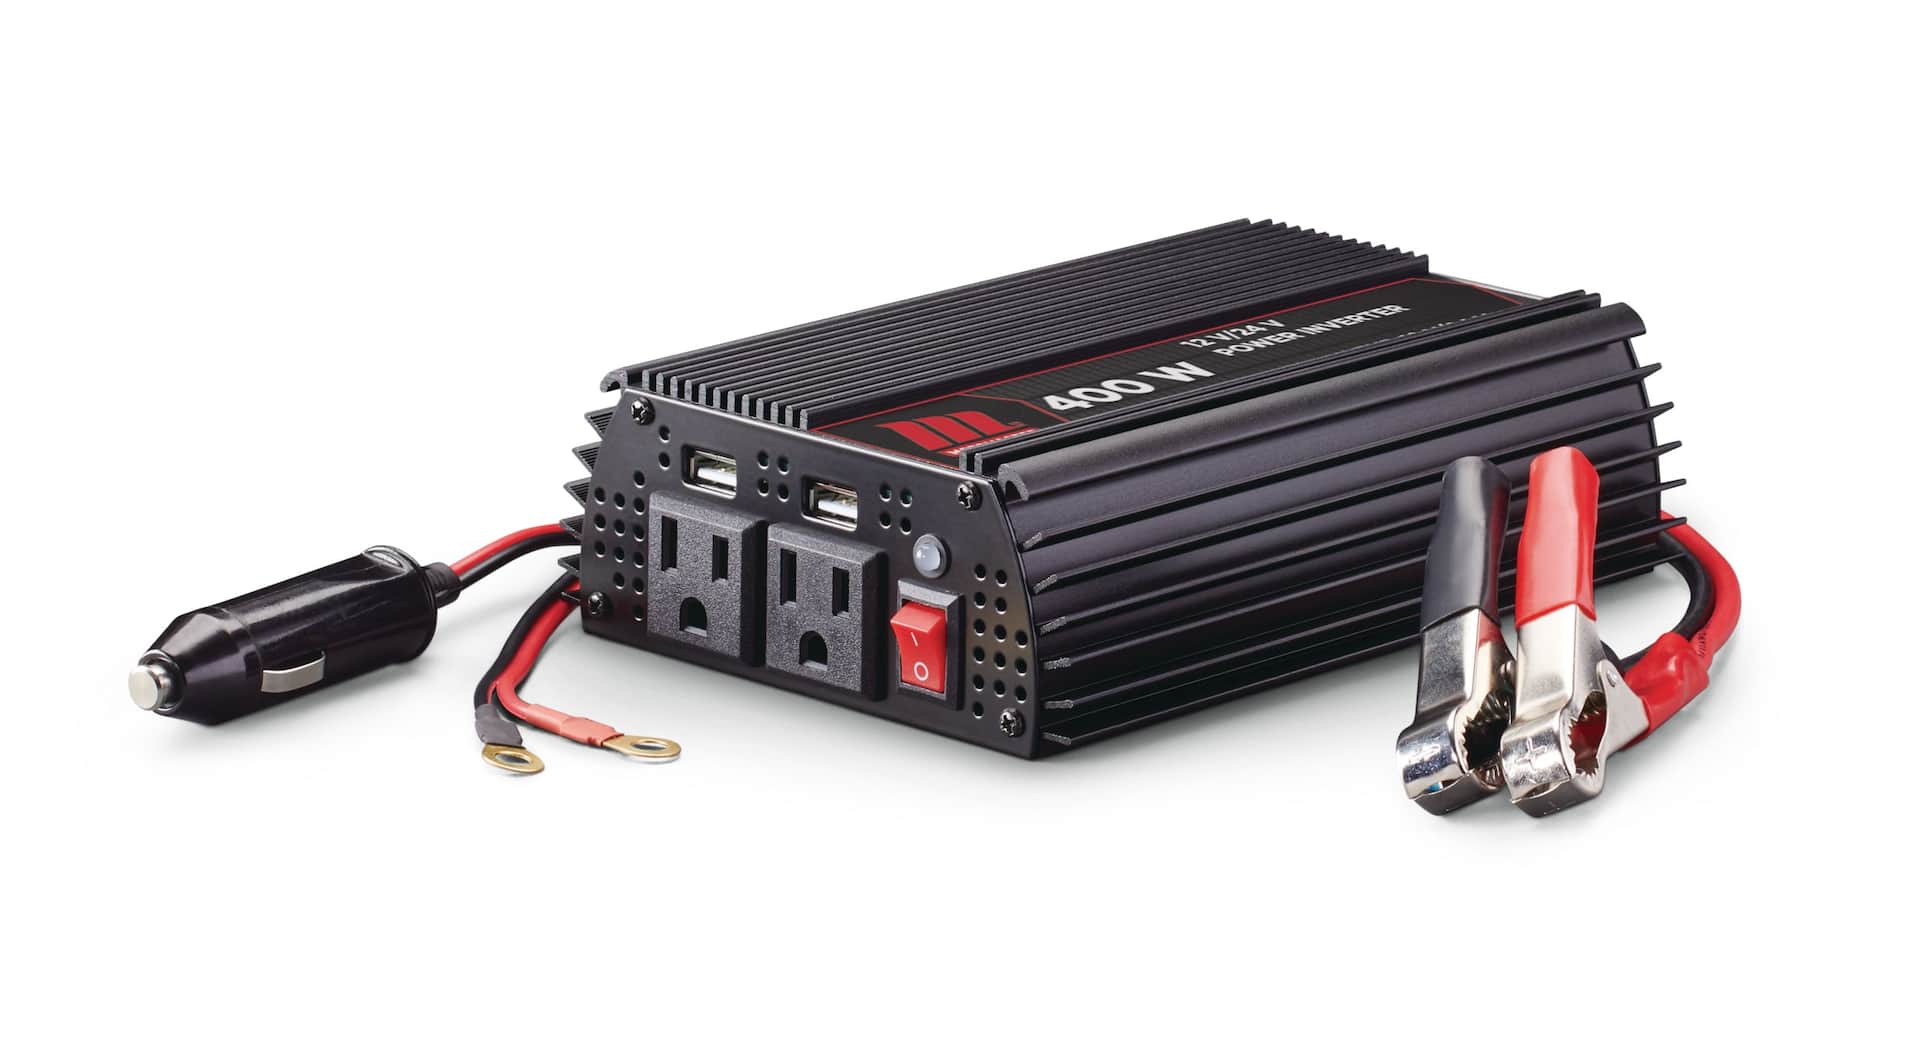 Convertisseur de Tension de Puissance, Multi-prises, Interface USB,  Convertisseur élévateur 110 V 220 V pour Appareils électriques (Prise UE)